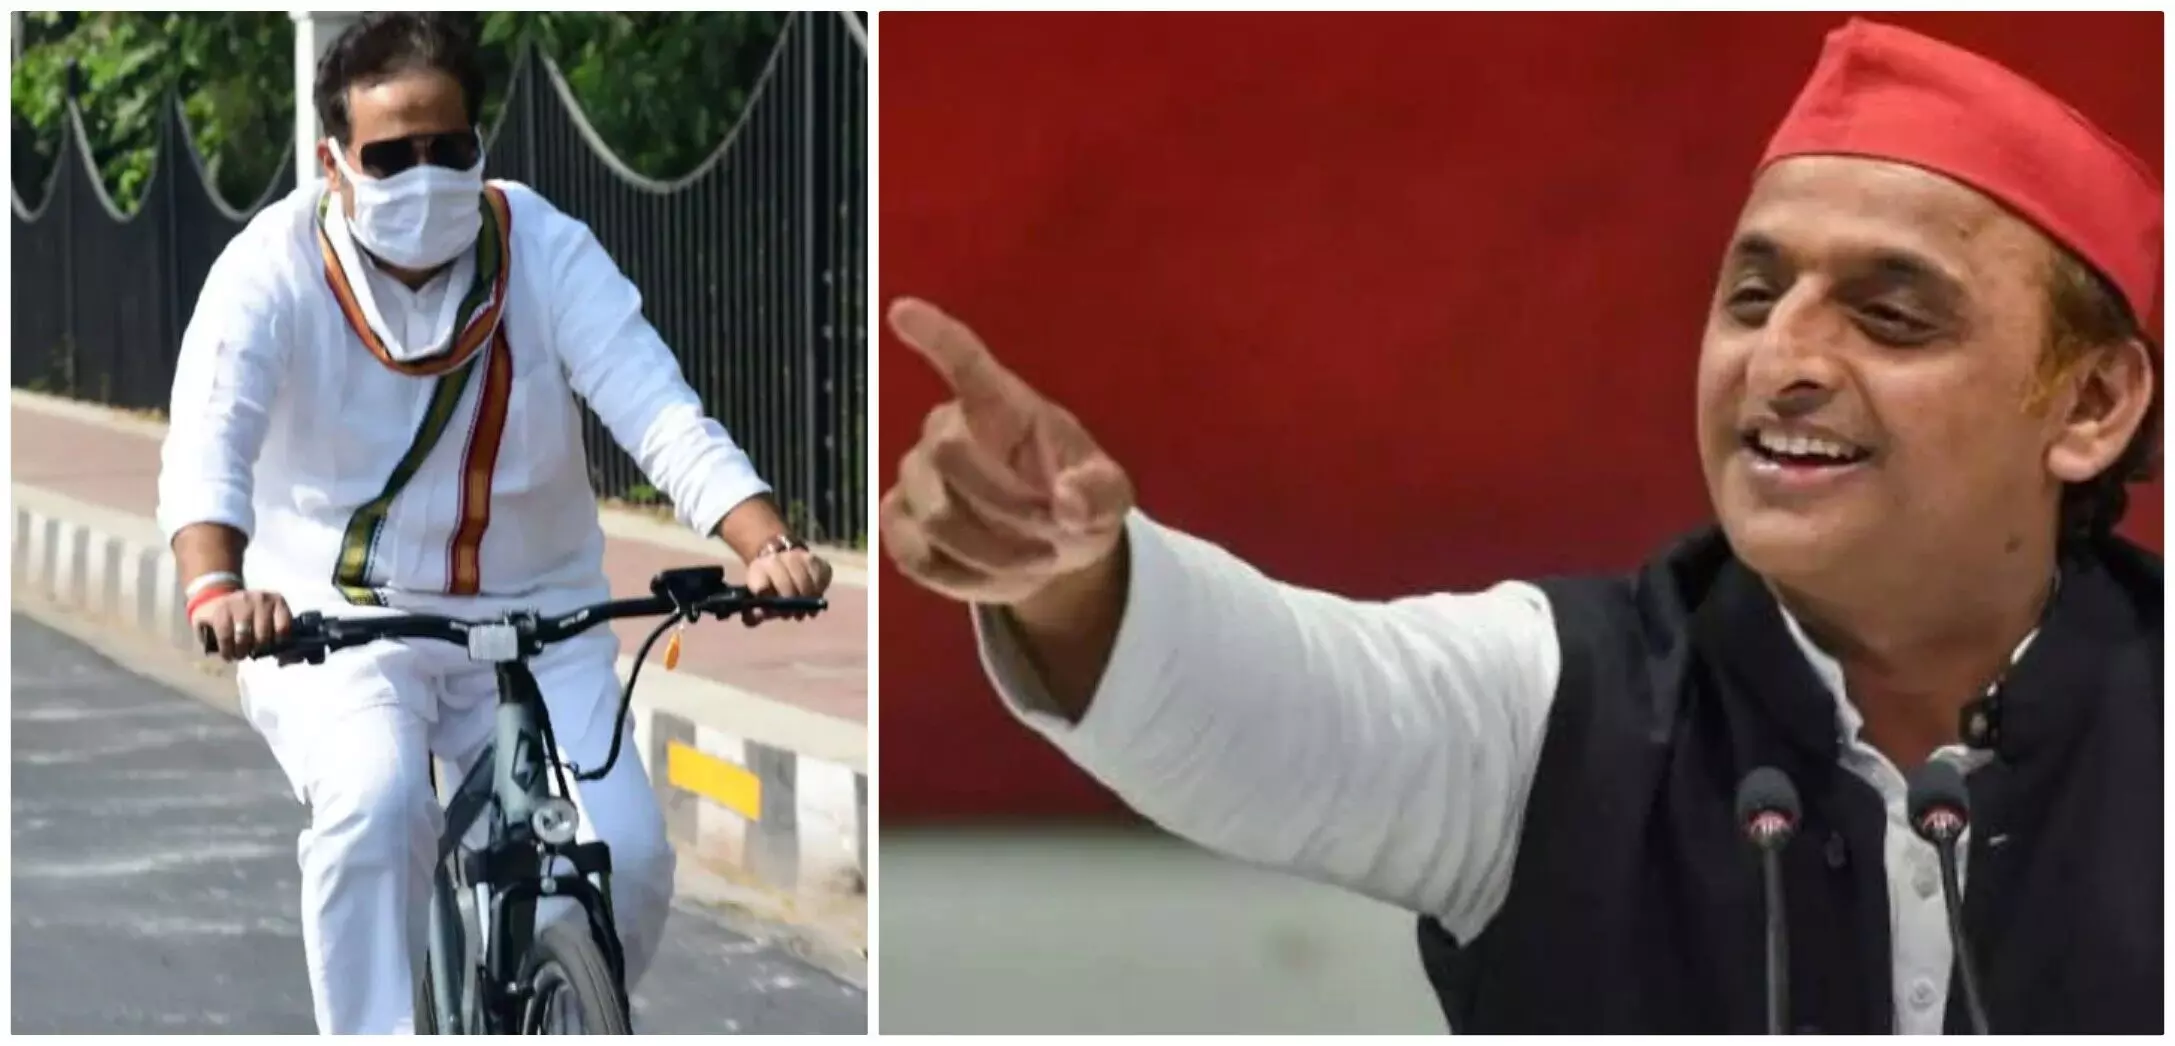 Samikwadi Party President Akhilesh Yadav told drama about Srikanths cycling